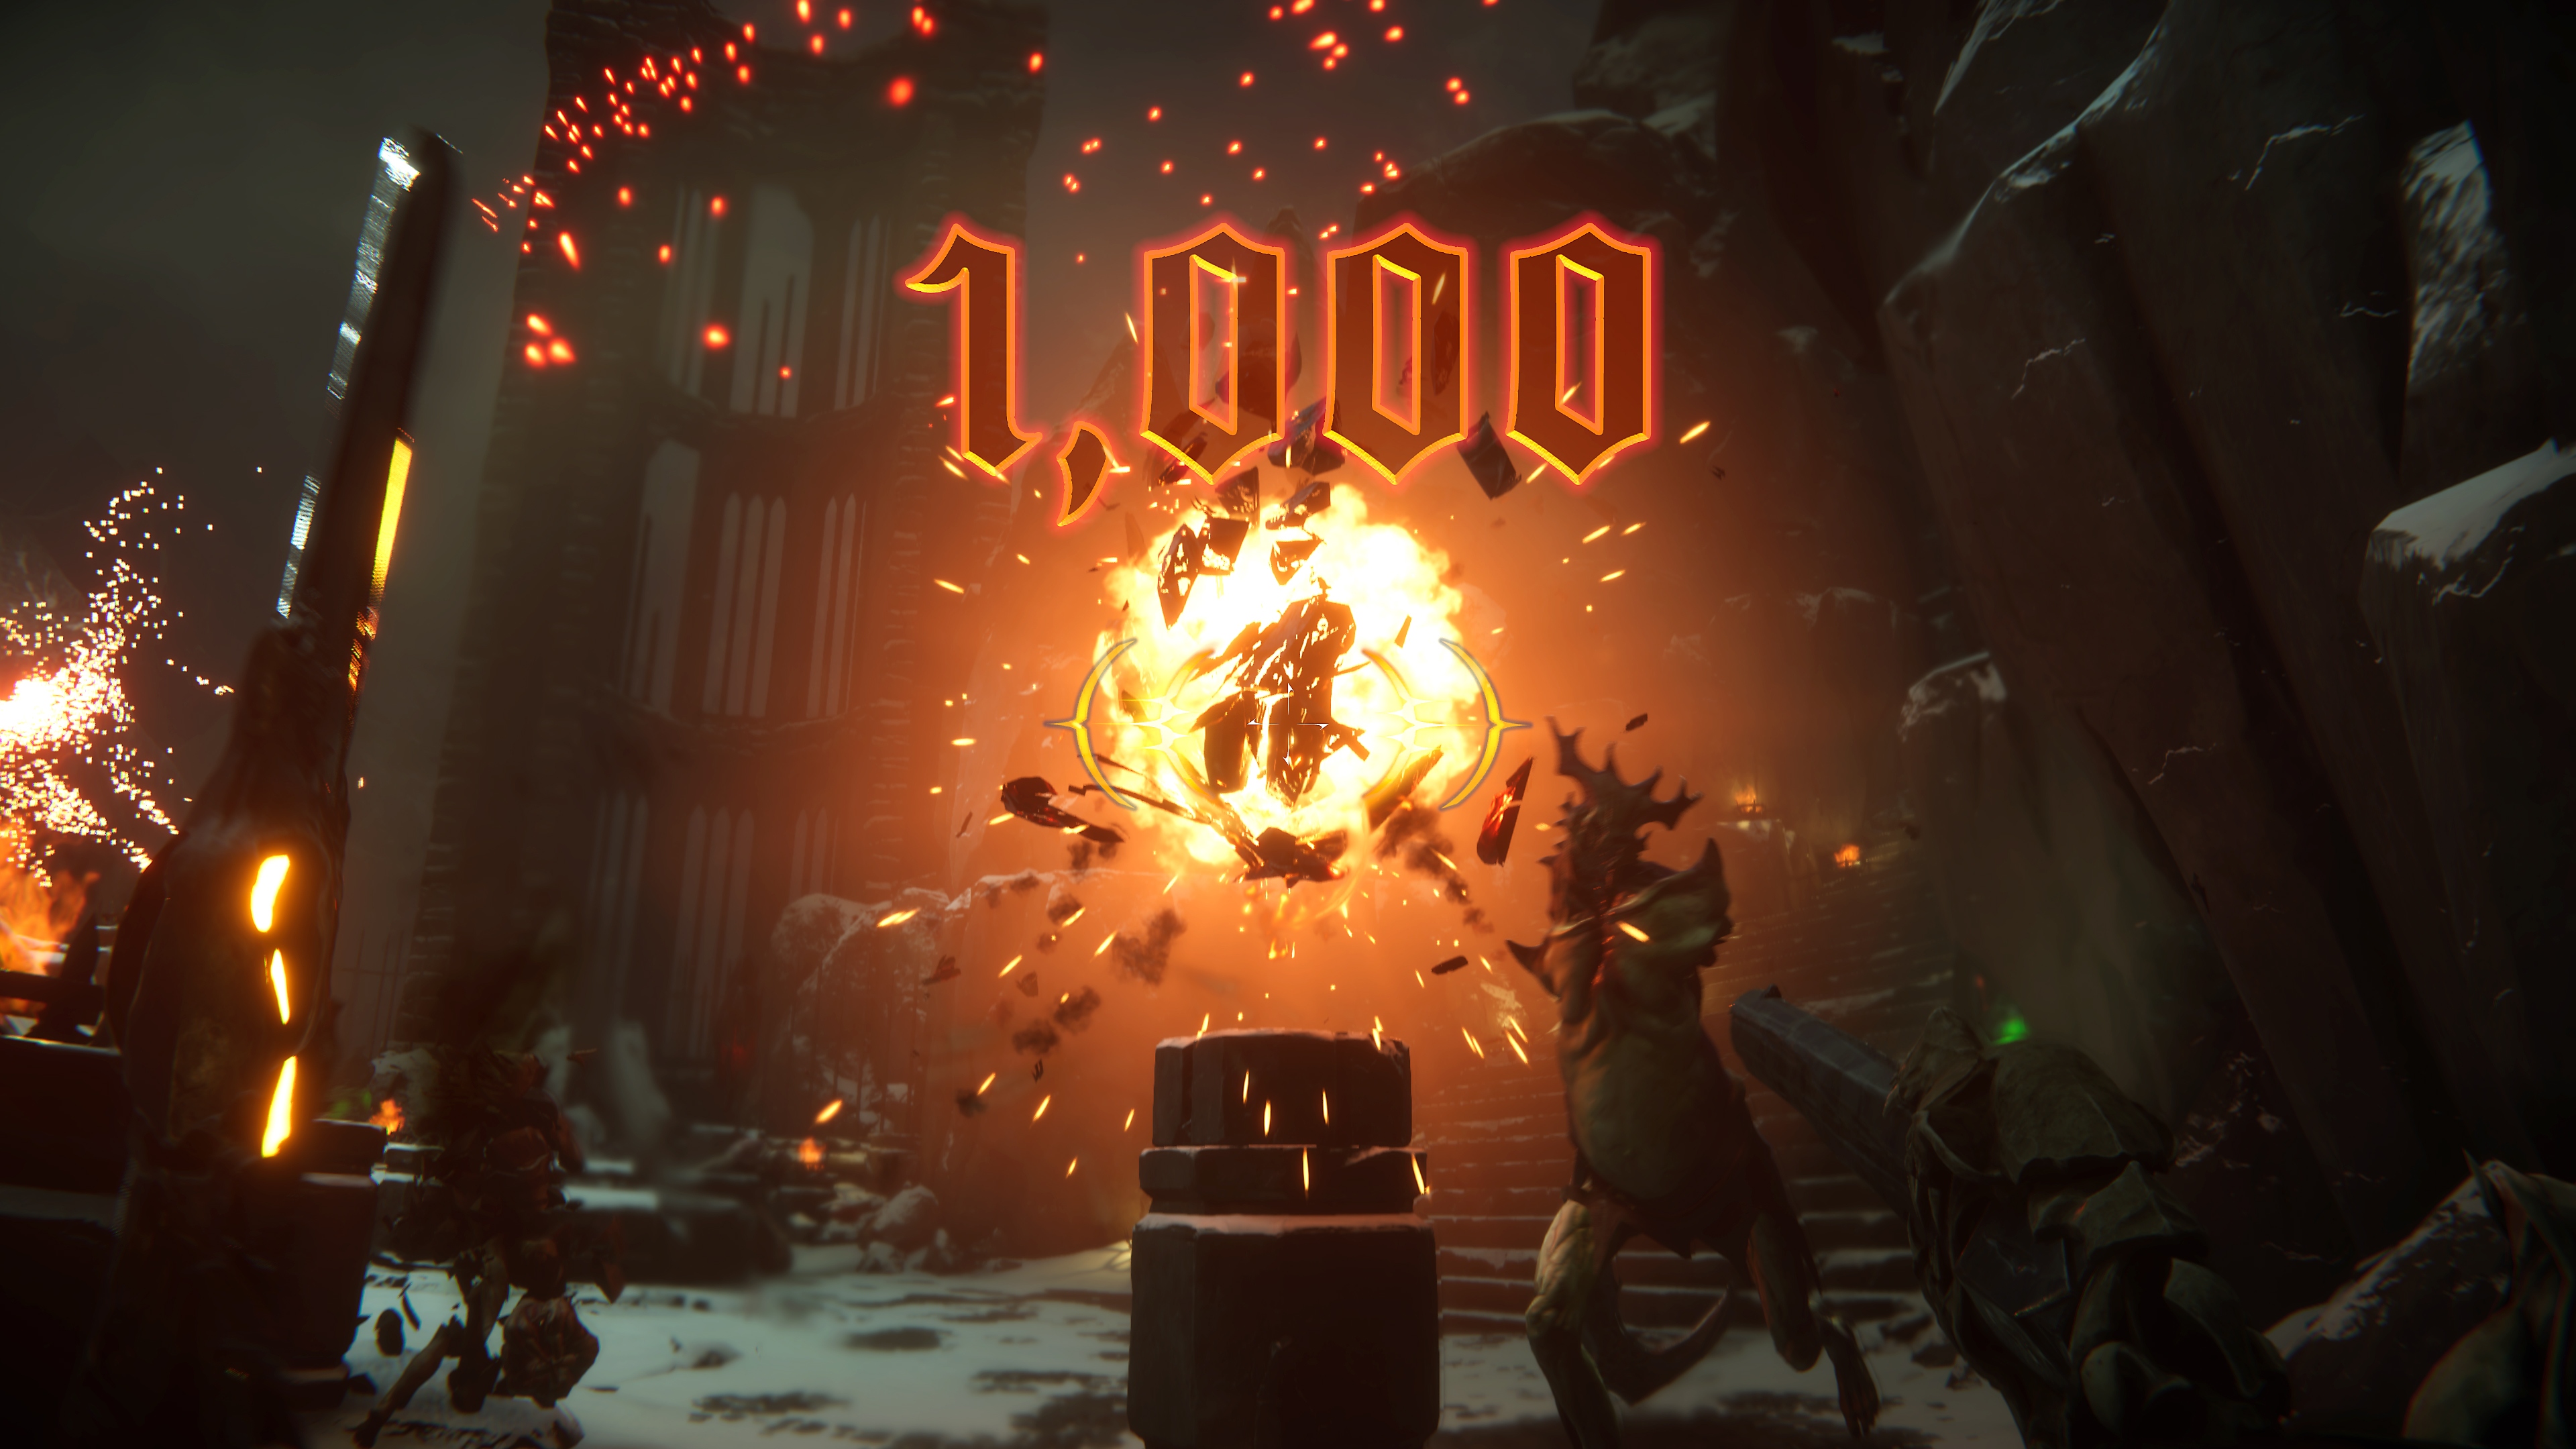 Captura de pantalla de Metal Hellsinger con una gran explosión en el centro y una puntuación de “1000” puntos en la pantalla.